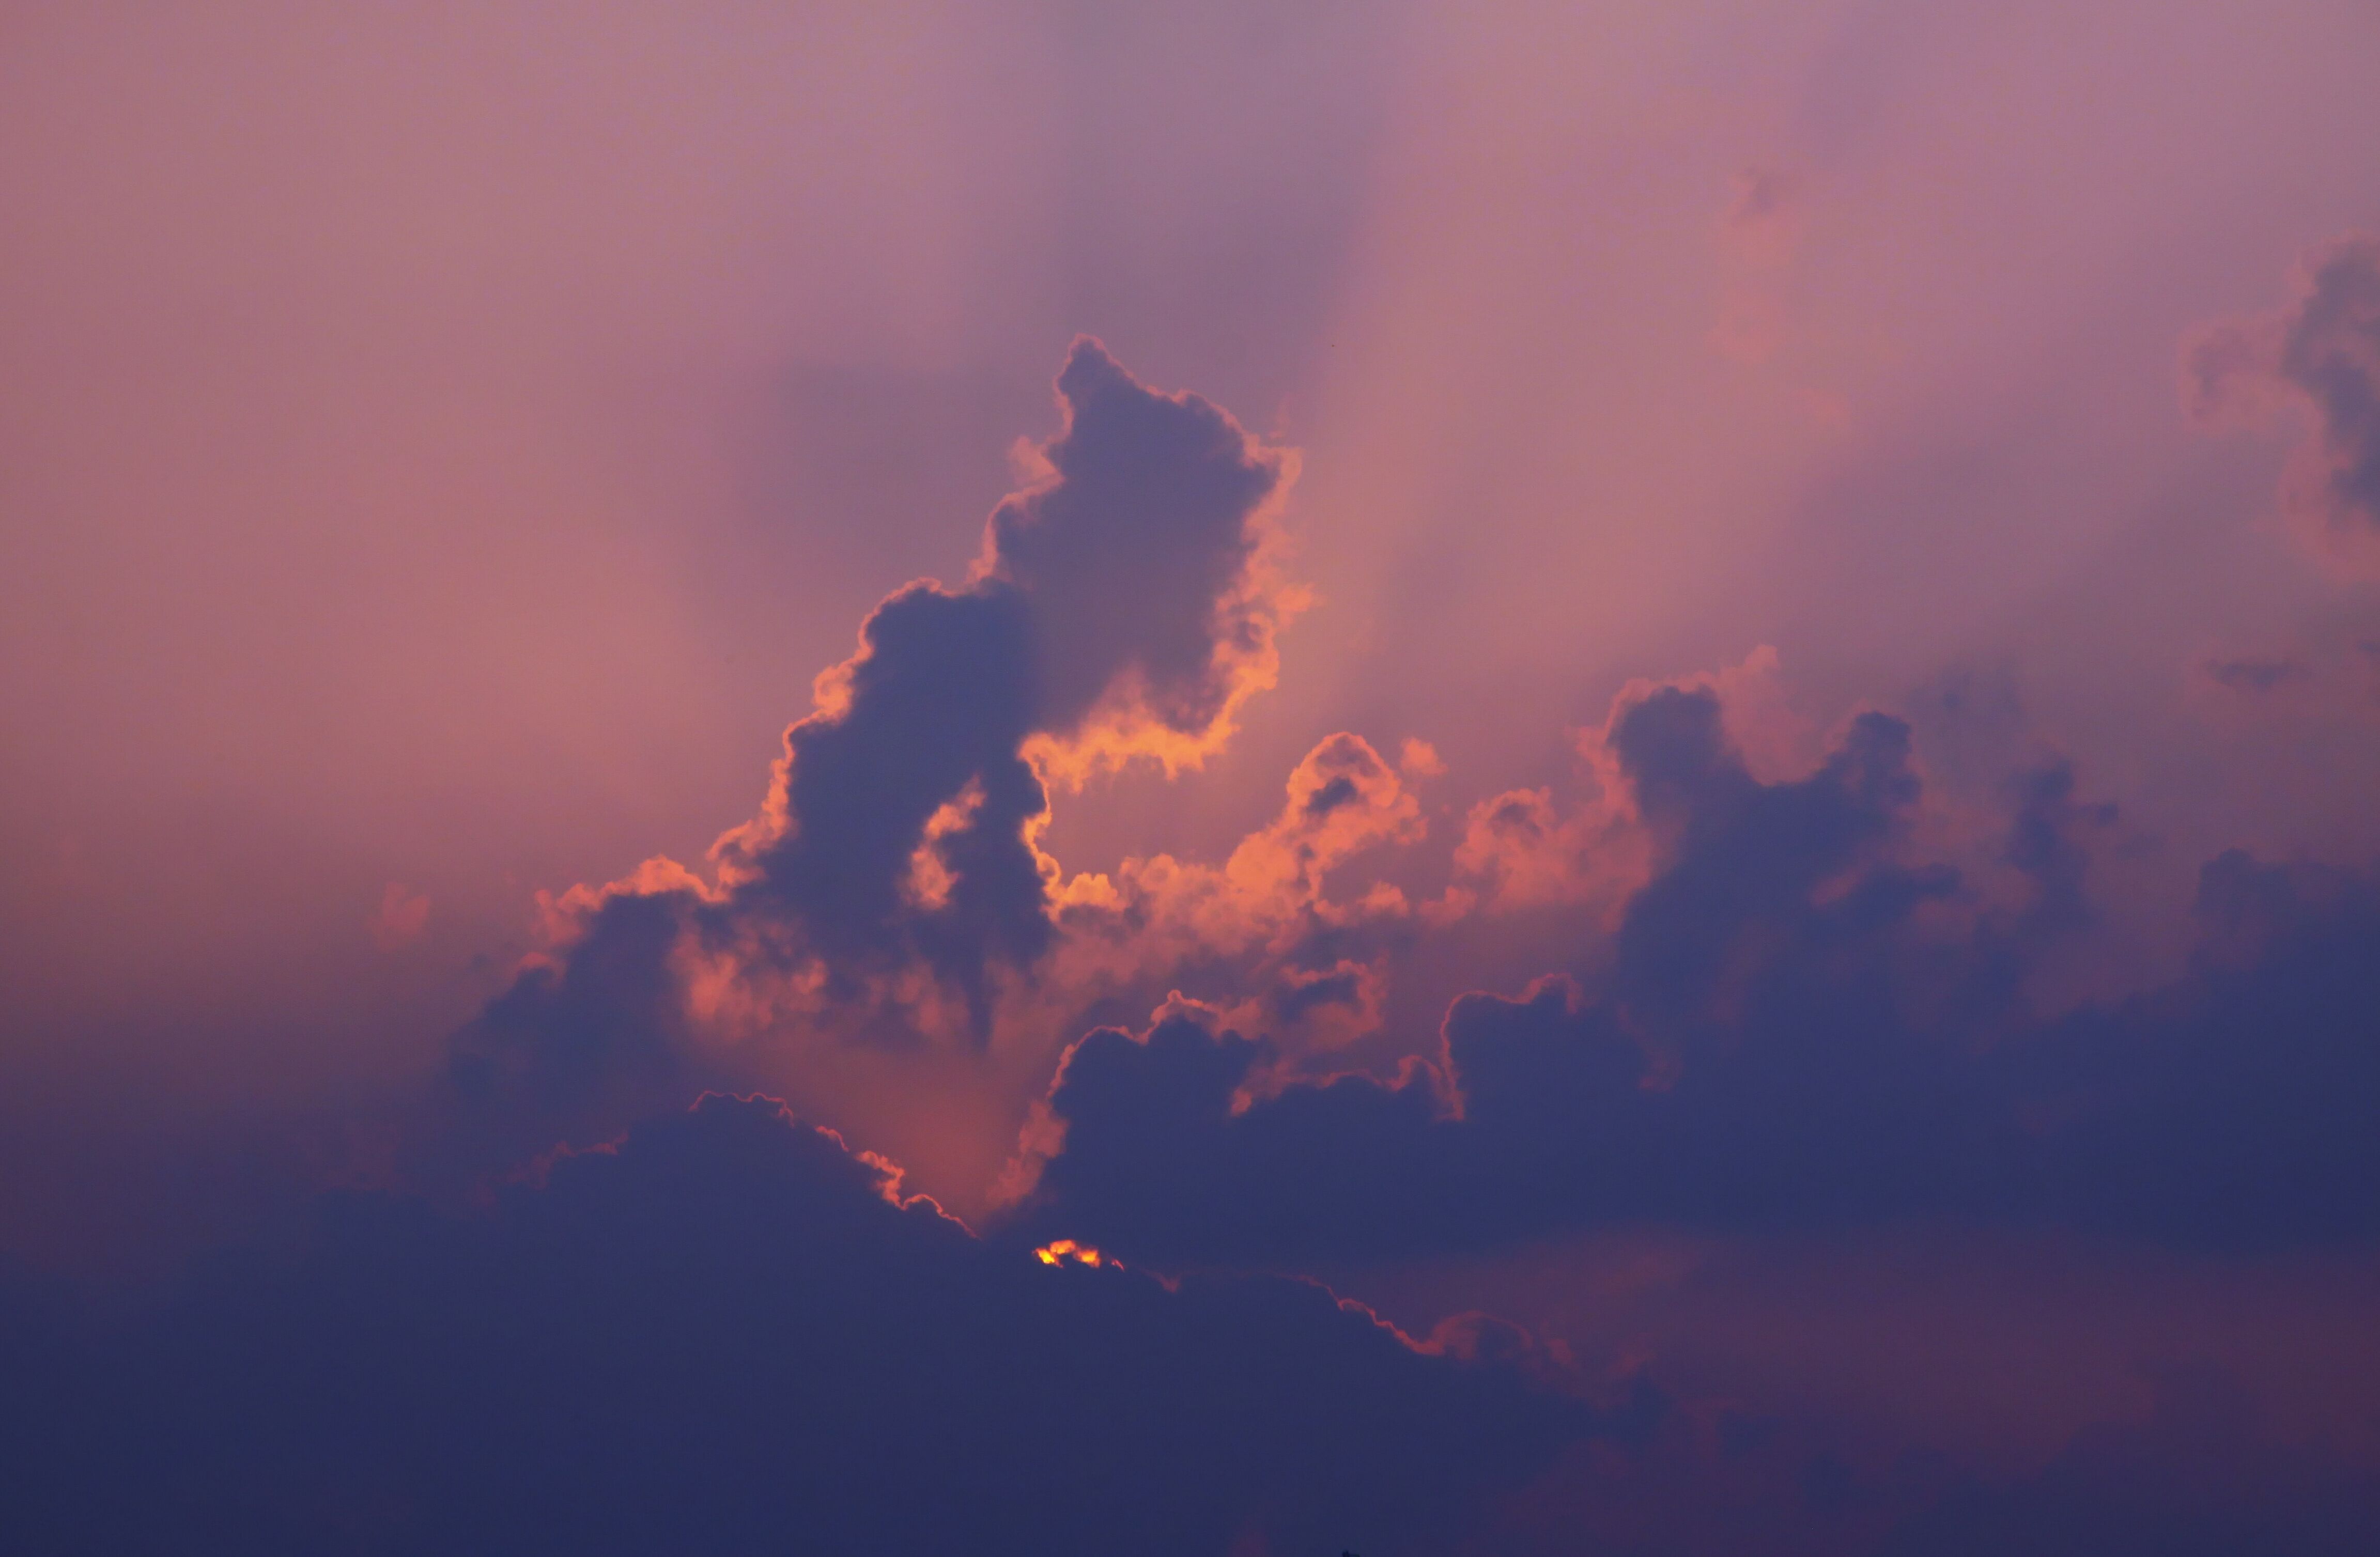 郑州现丁达尔效应奇观 天空云彩形态多变绚丽异彩